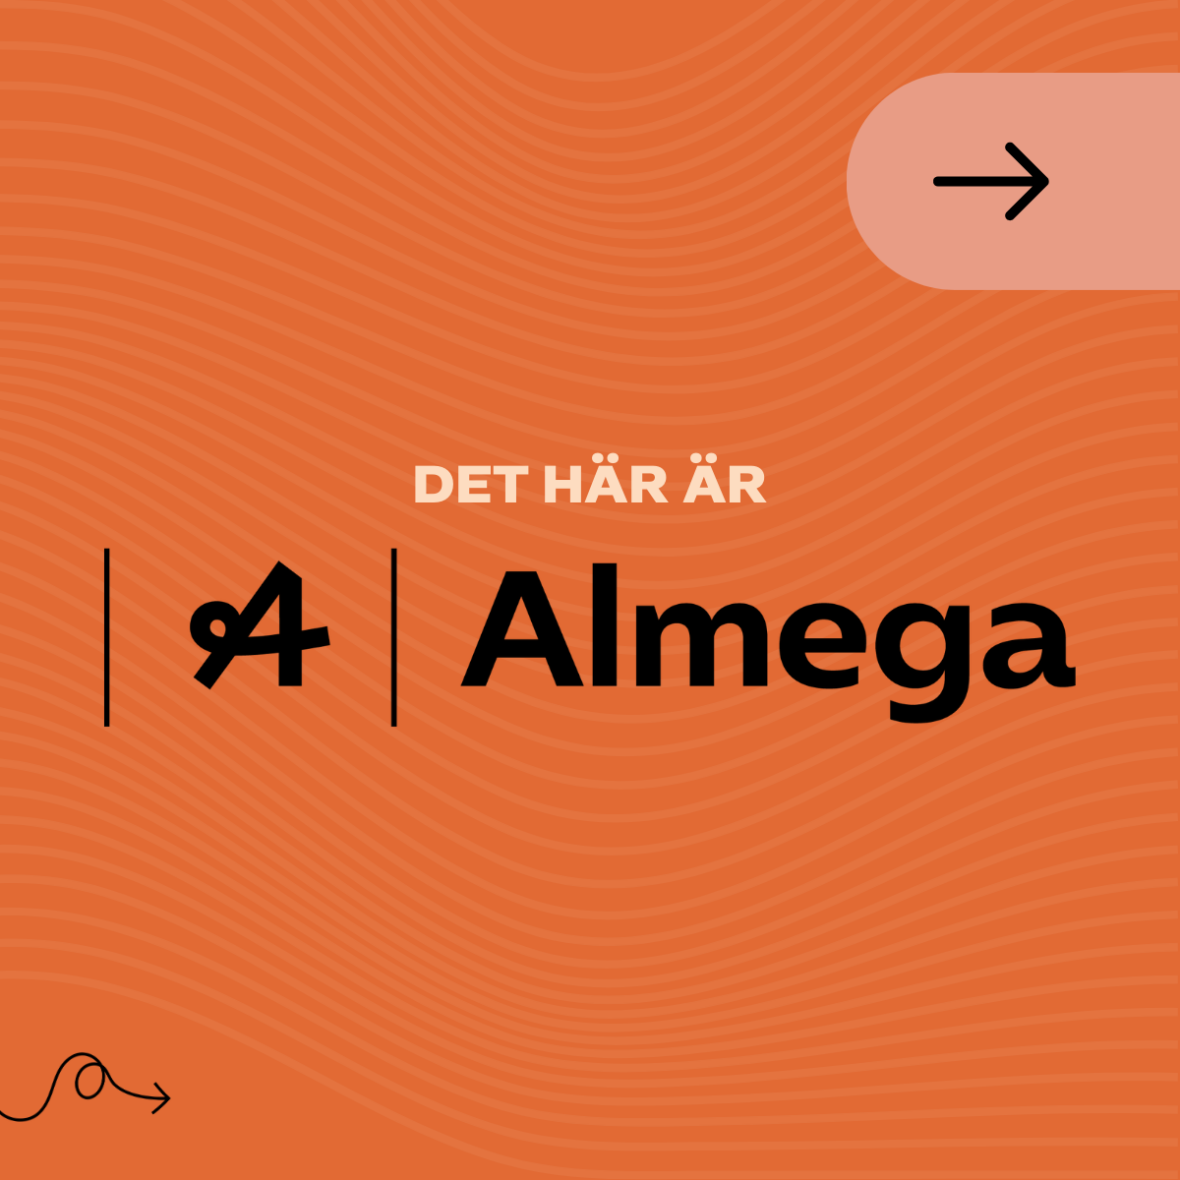 Grafisk bild med texten "Det här är Almega". Bilden är orange och texten svart. Länk i bild går till almega.se